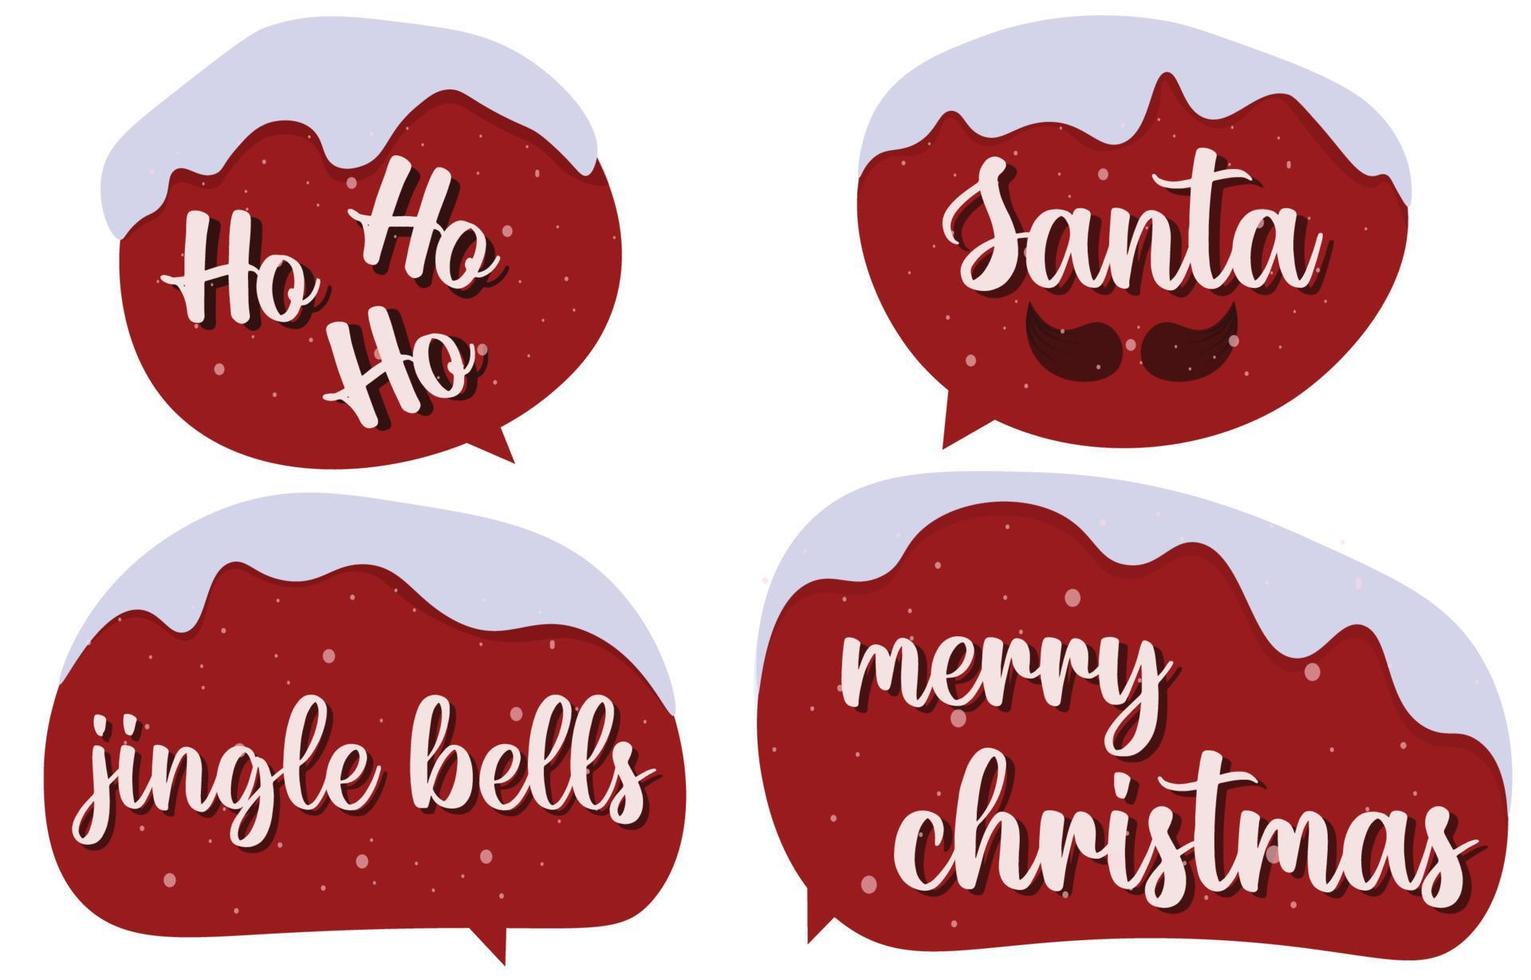 Stellen Sie weihnachtliche Sprechblasen auf weißem Hintergrund ein. mit den worten frohe weihnachten, ho ho, jingle bell. Doodle-Chat-Vektornachricht oder Kommunikationssymbol. Wolke spricht für Comics und minimale Dialoge vektor